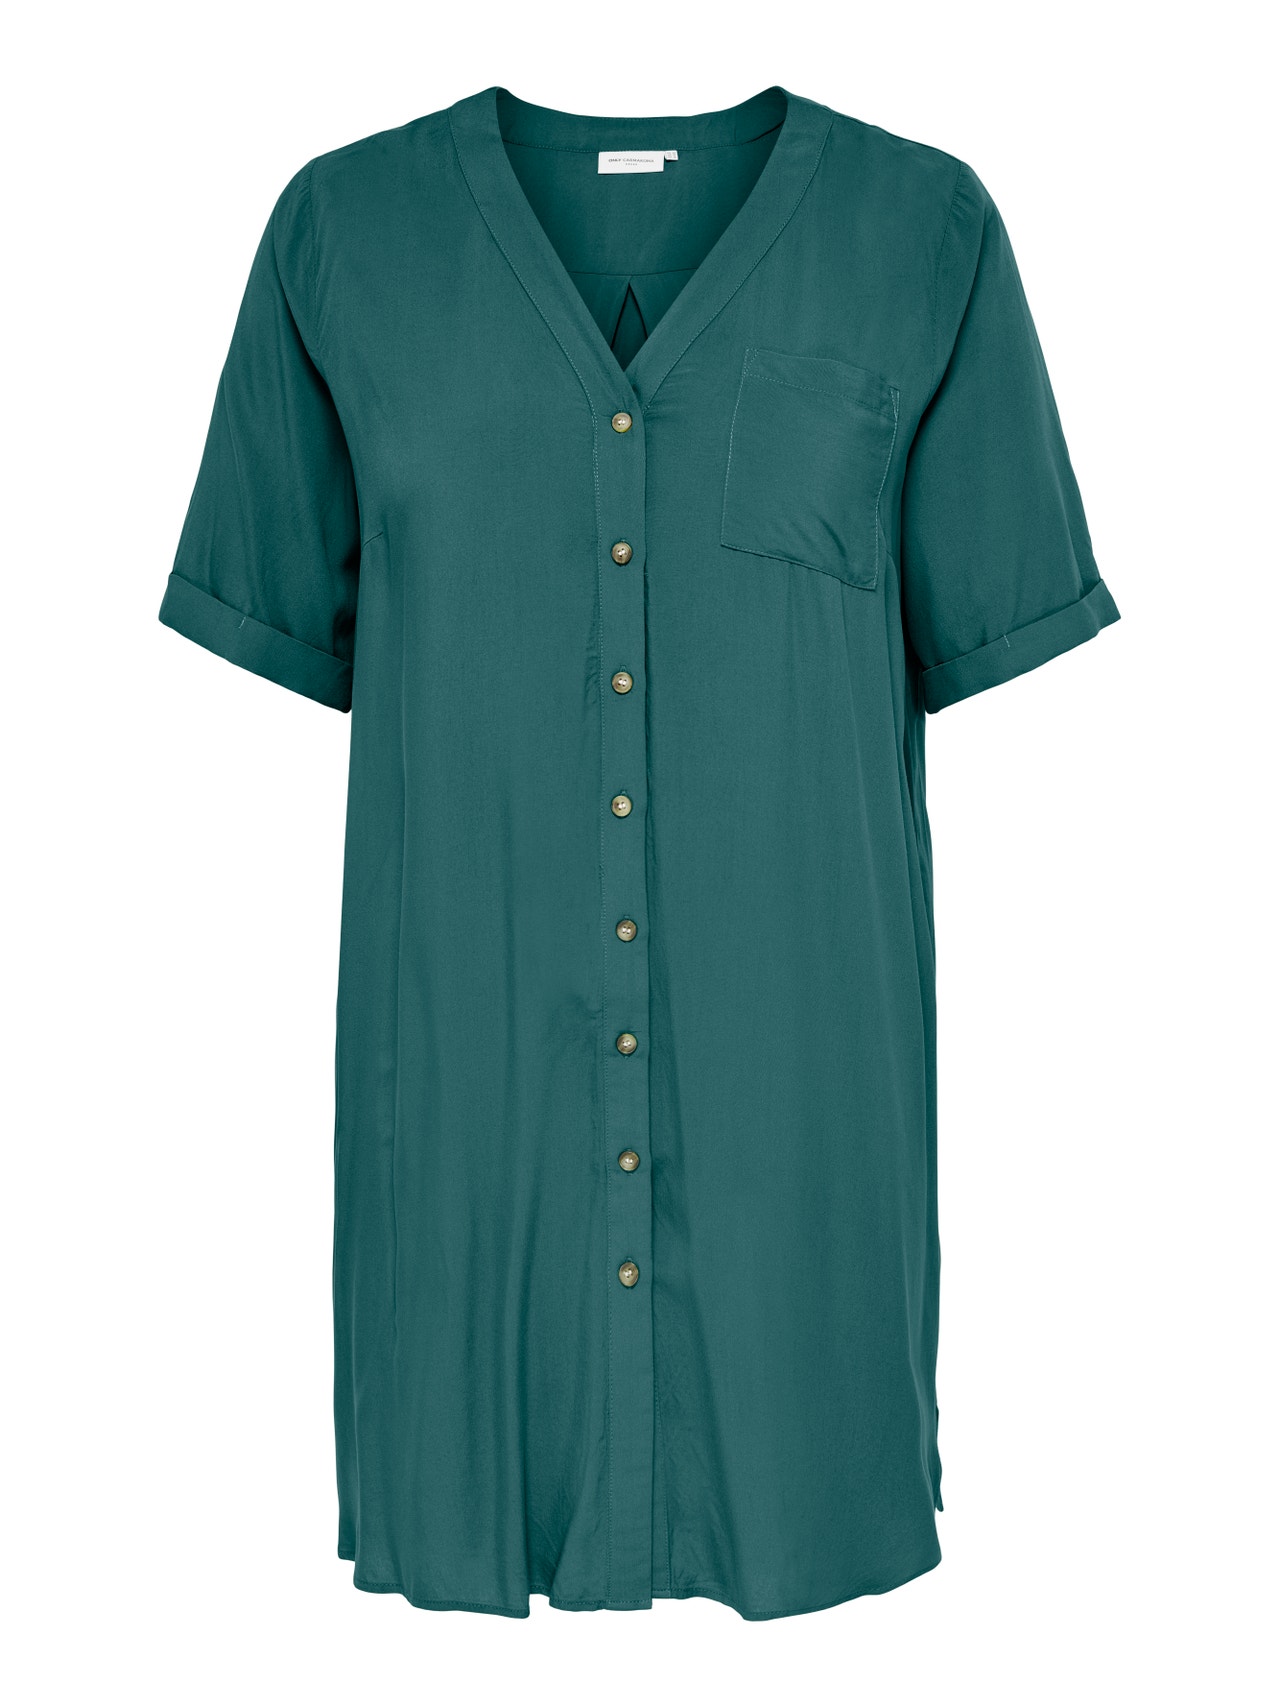 ONLY Curvy viscose Shirt Dress -Balsam - 15263335